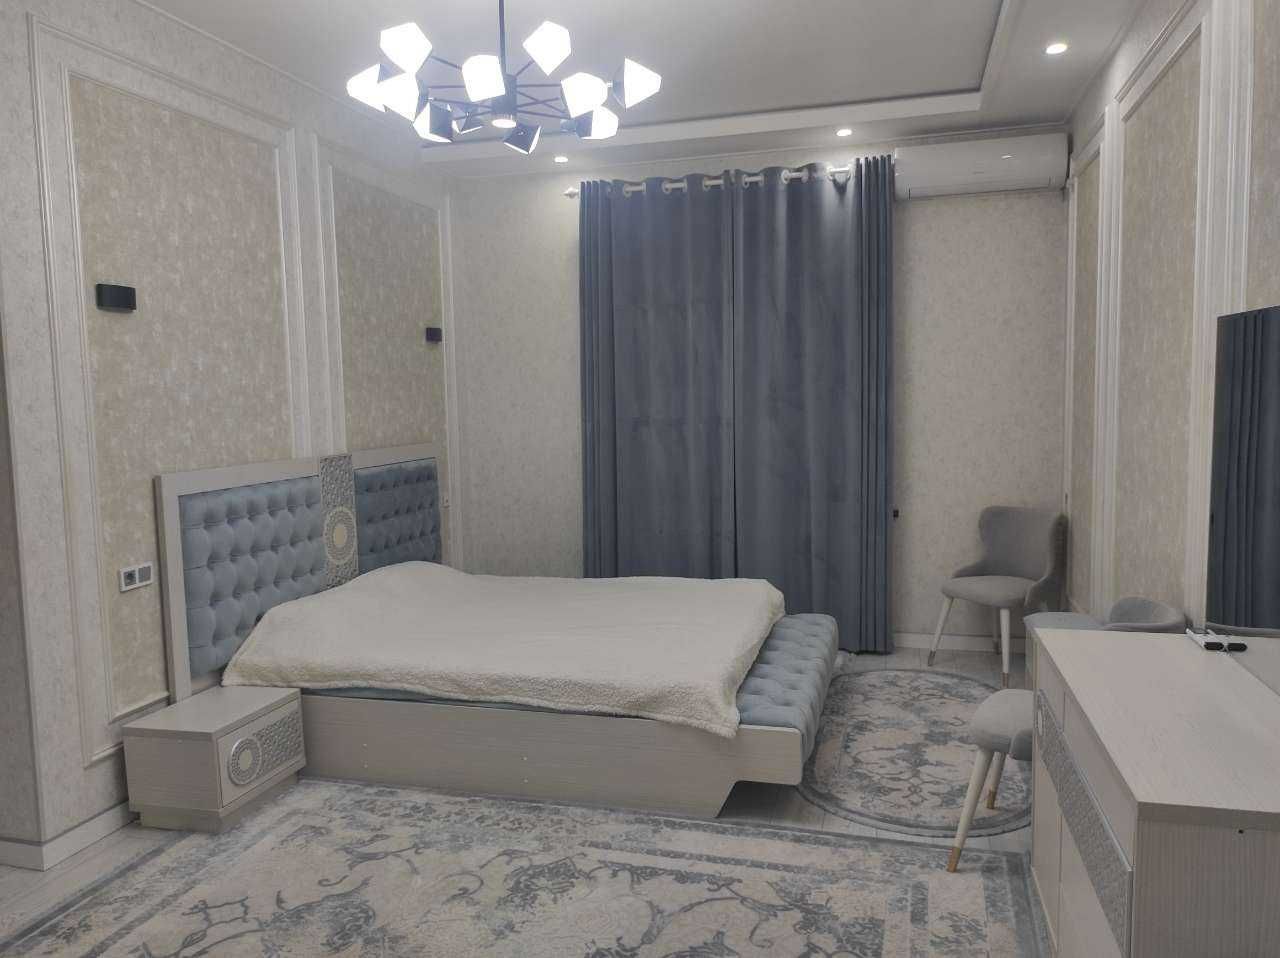 Новостройка рядом Ташкент сити 3х комн 2 спальня 2 ванная